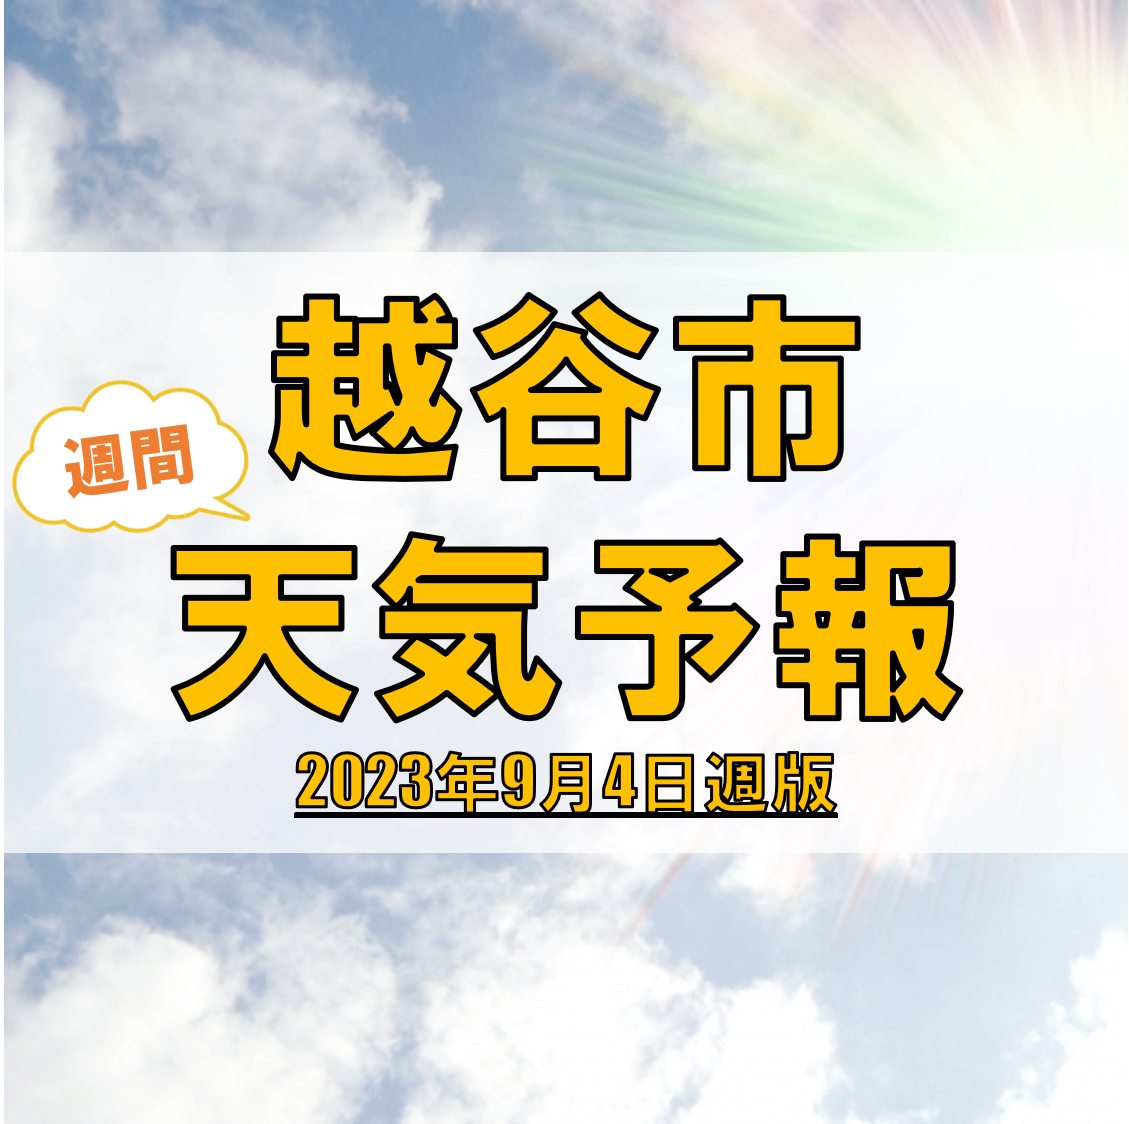 越谷市の天気 週間予報【2023年9月4日週】